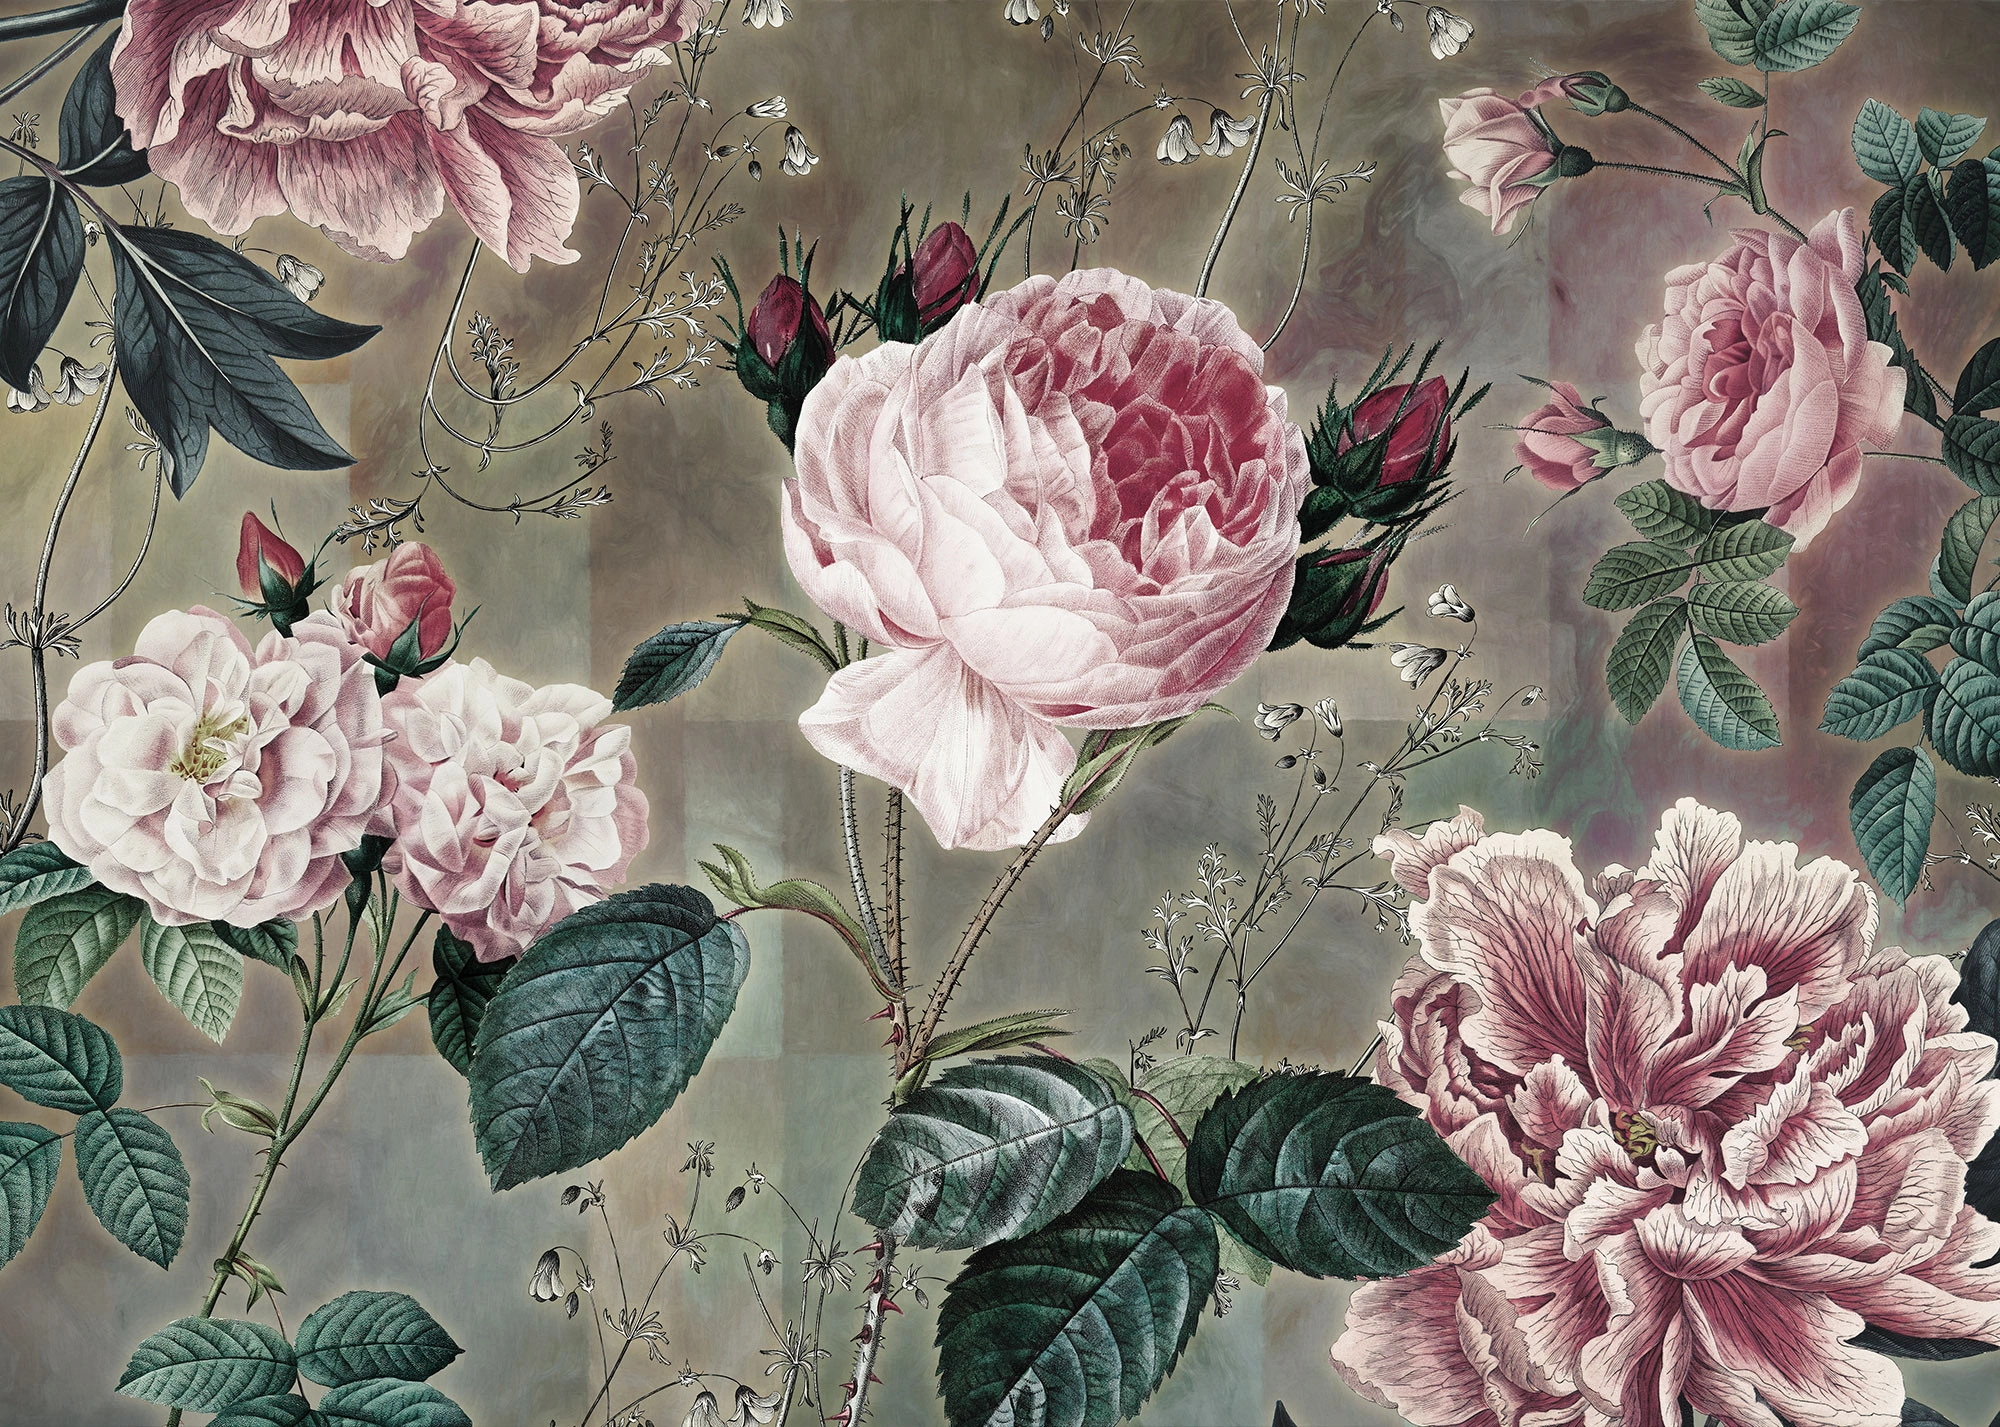 Vintage virágmintás vlies posztertapéta óriás rózsa mintákkal